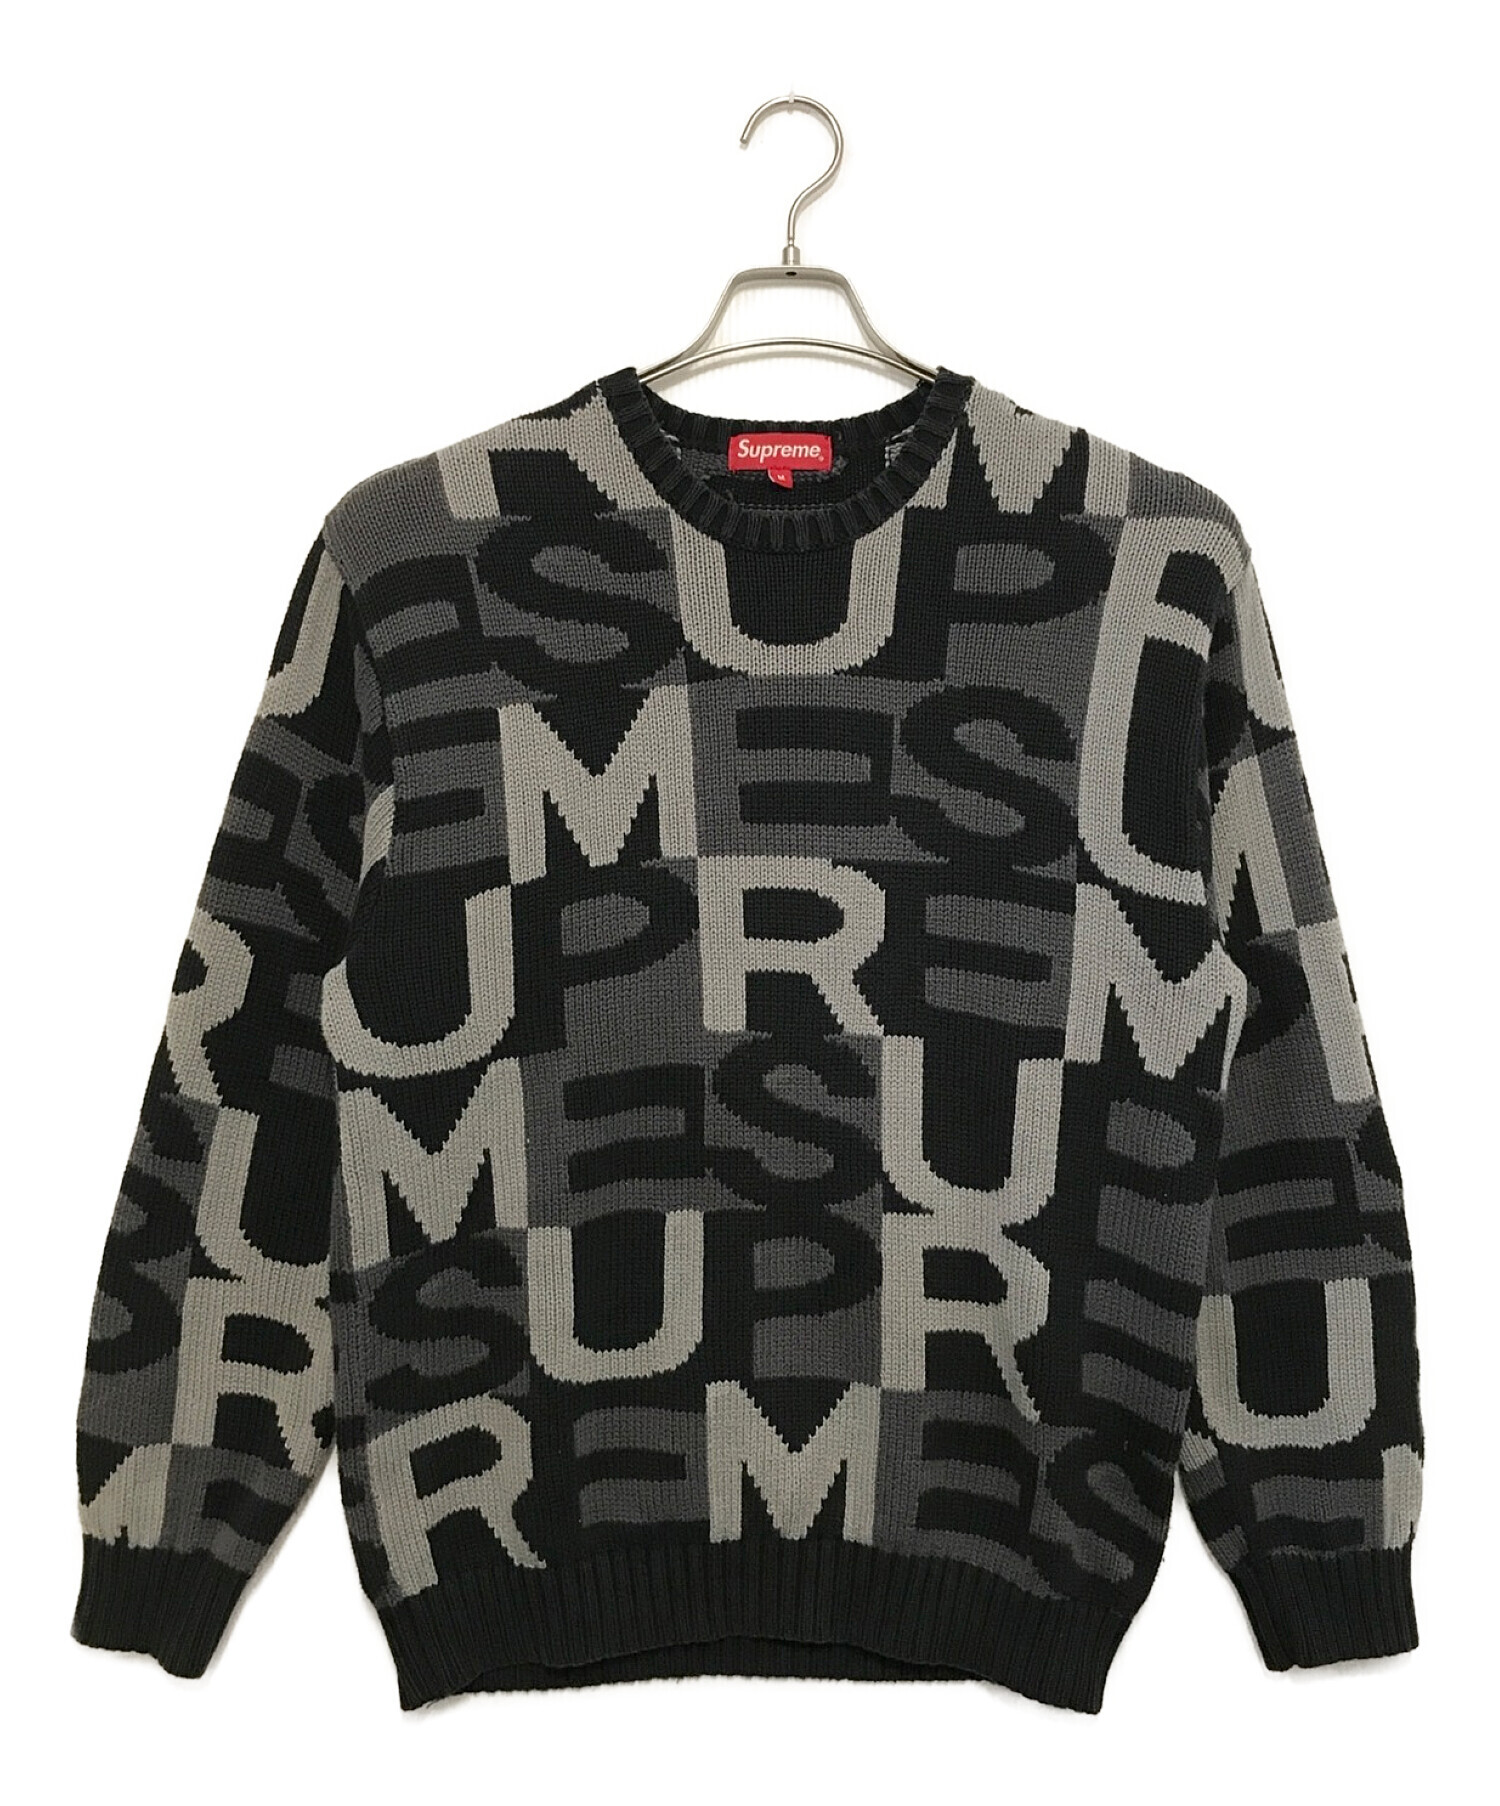 s送料込 supreme multi big letters sweater